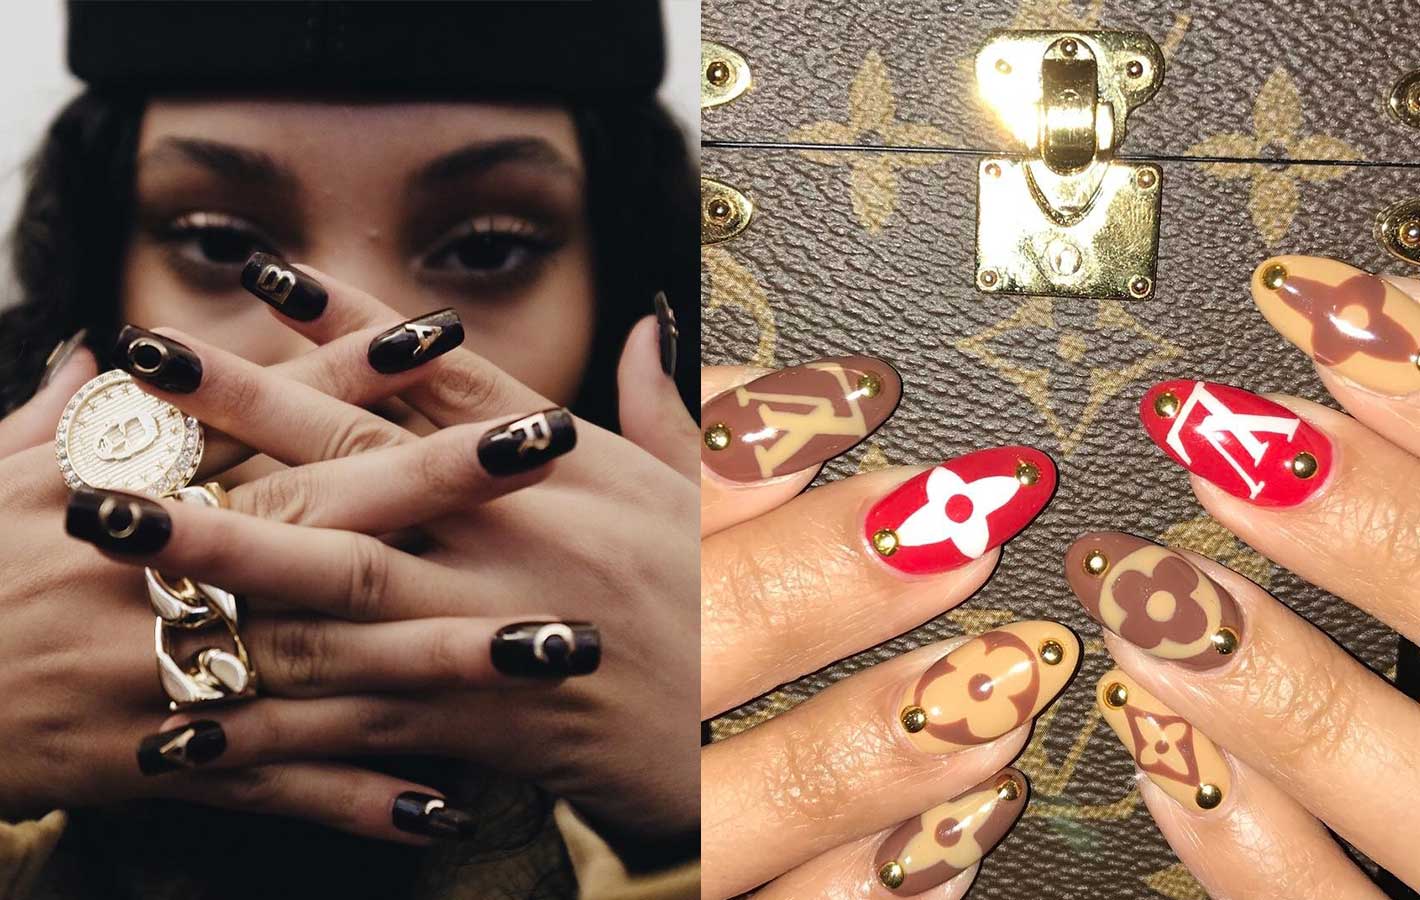 Paznokcie w kształcie kłów wampira – nowy trend z Instagrama